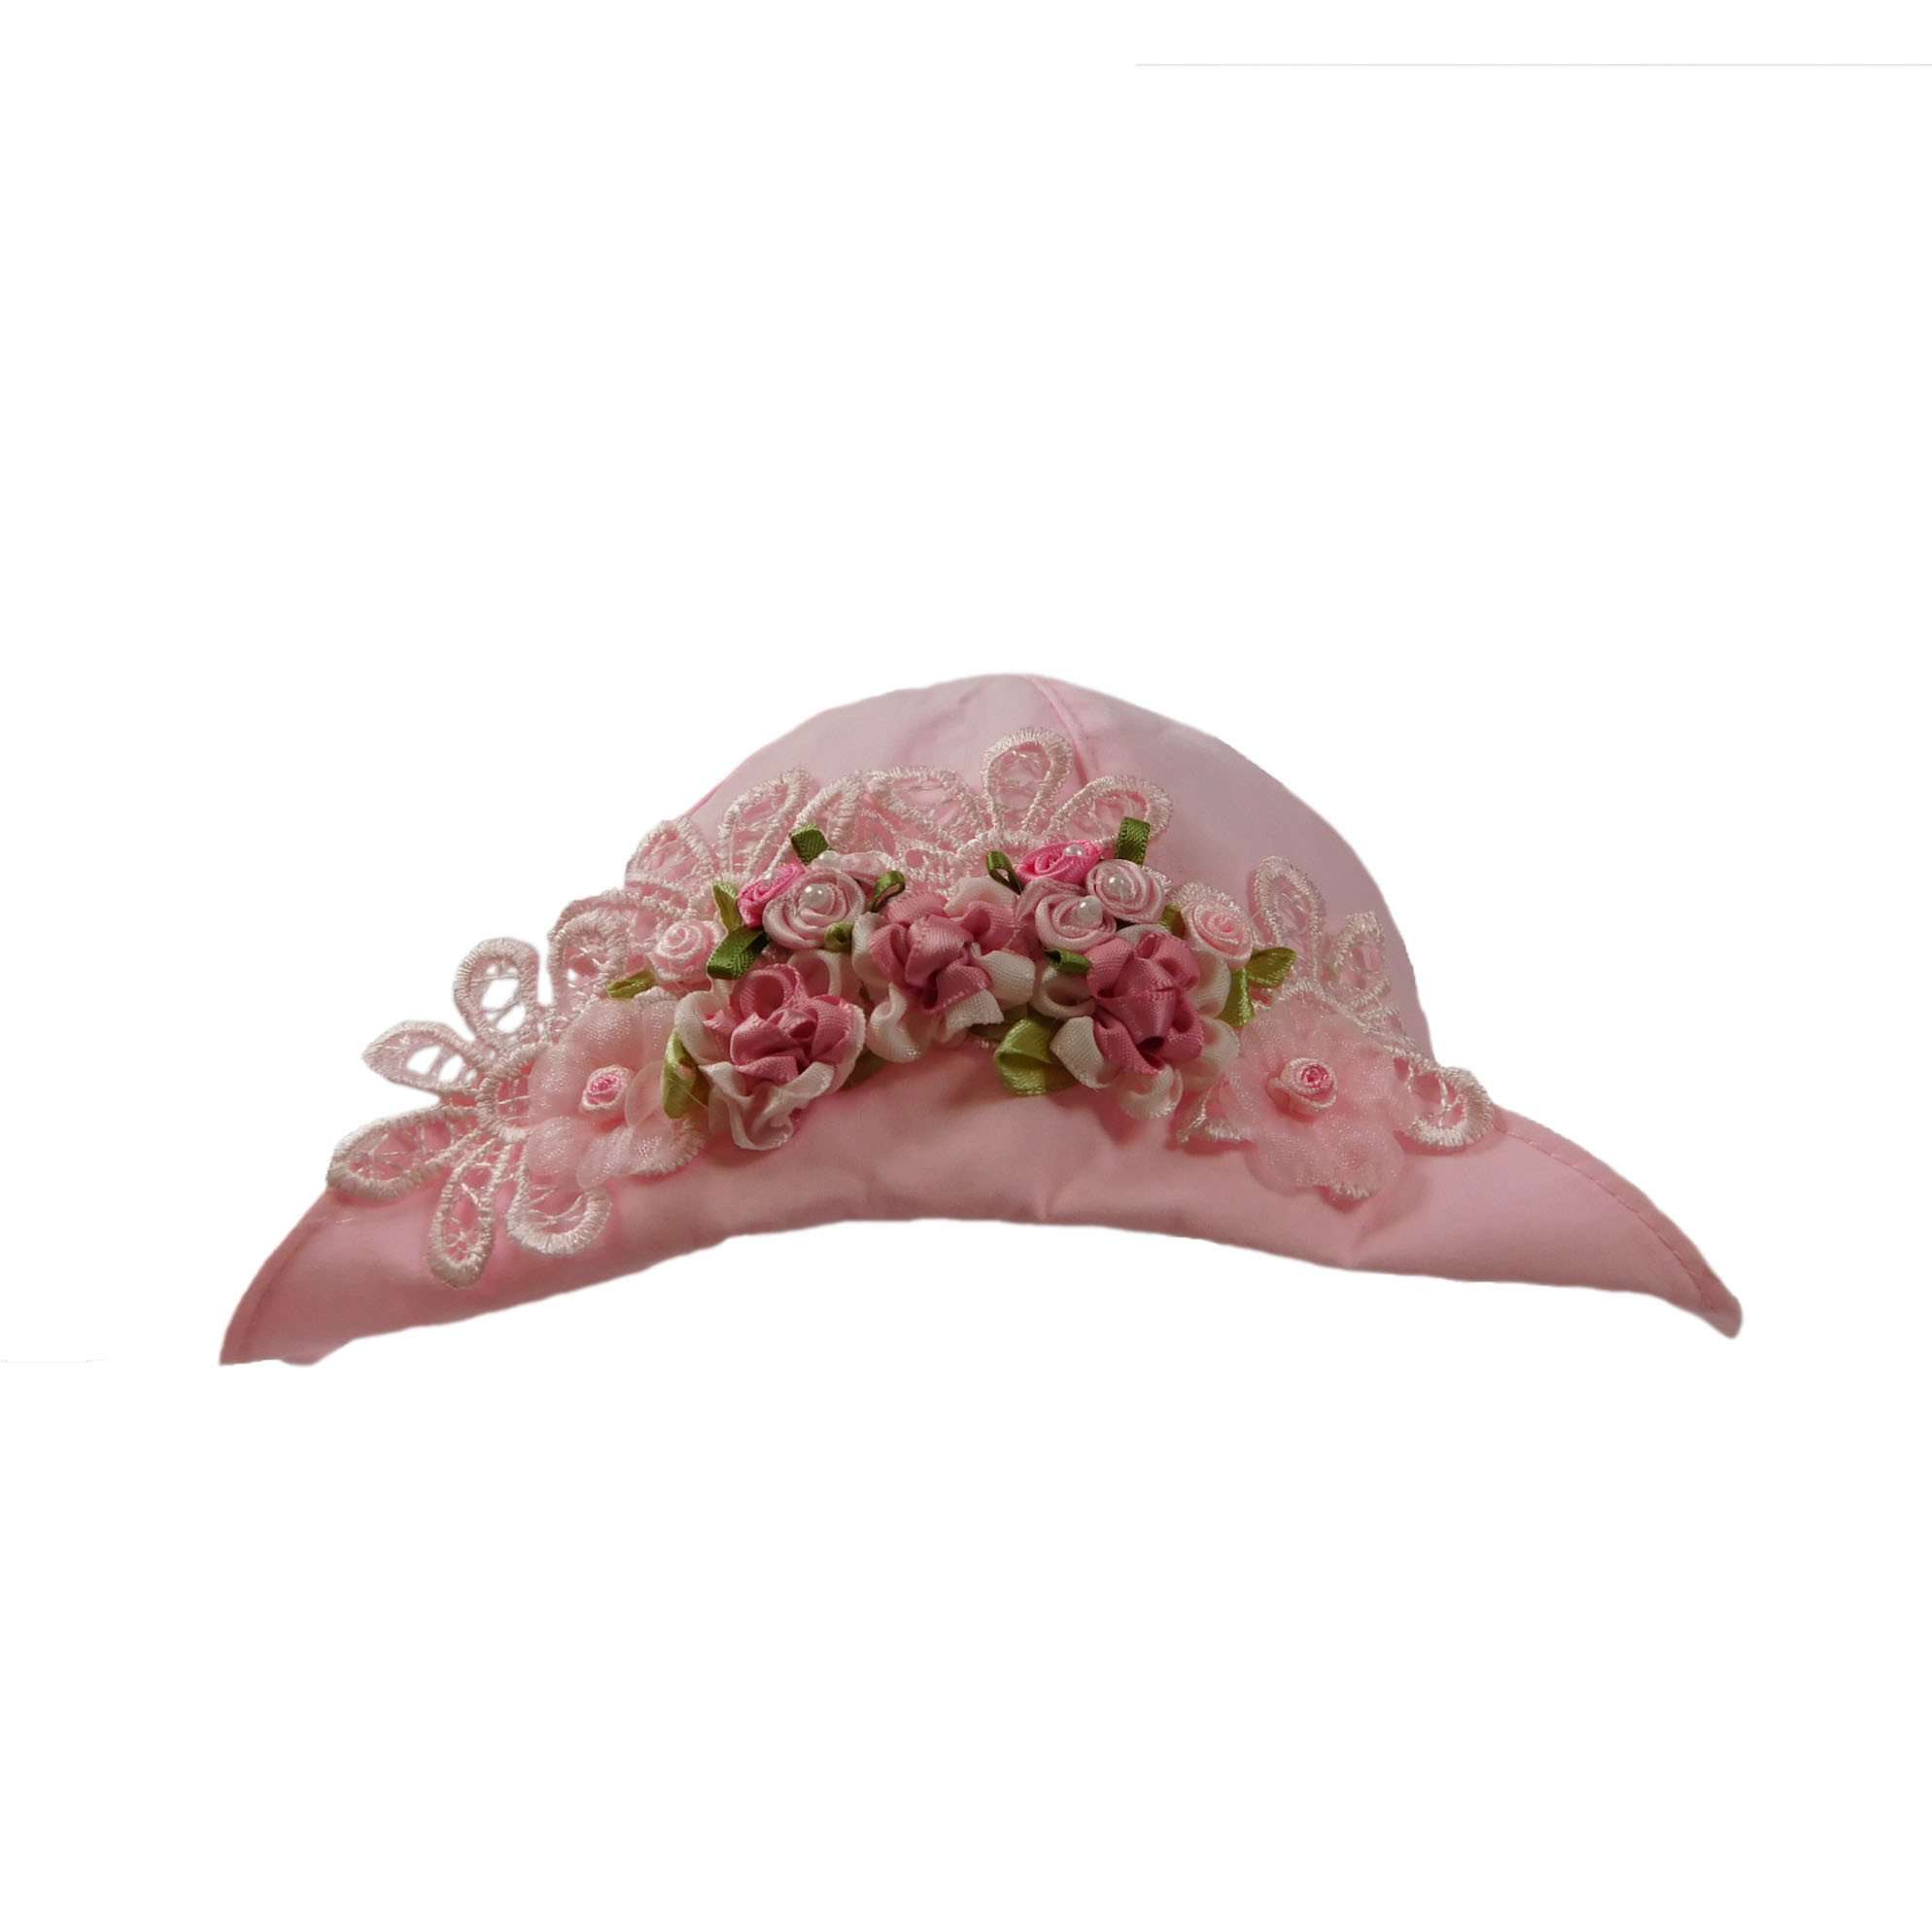 Vintage Pink Summer Hat for Baby Girls, Bucket Hat - SetarTrading Hats 